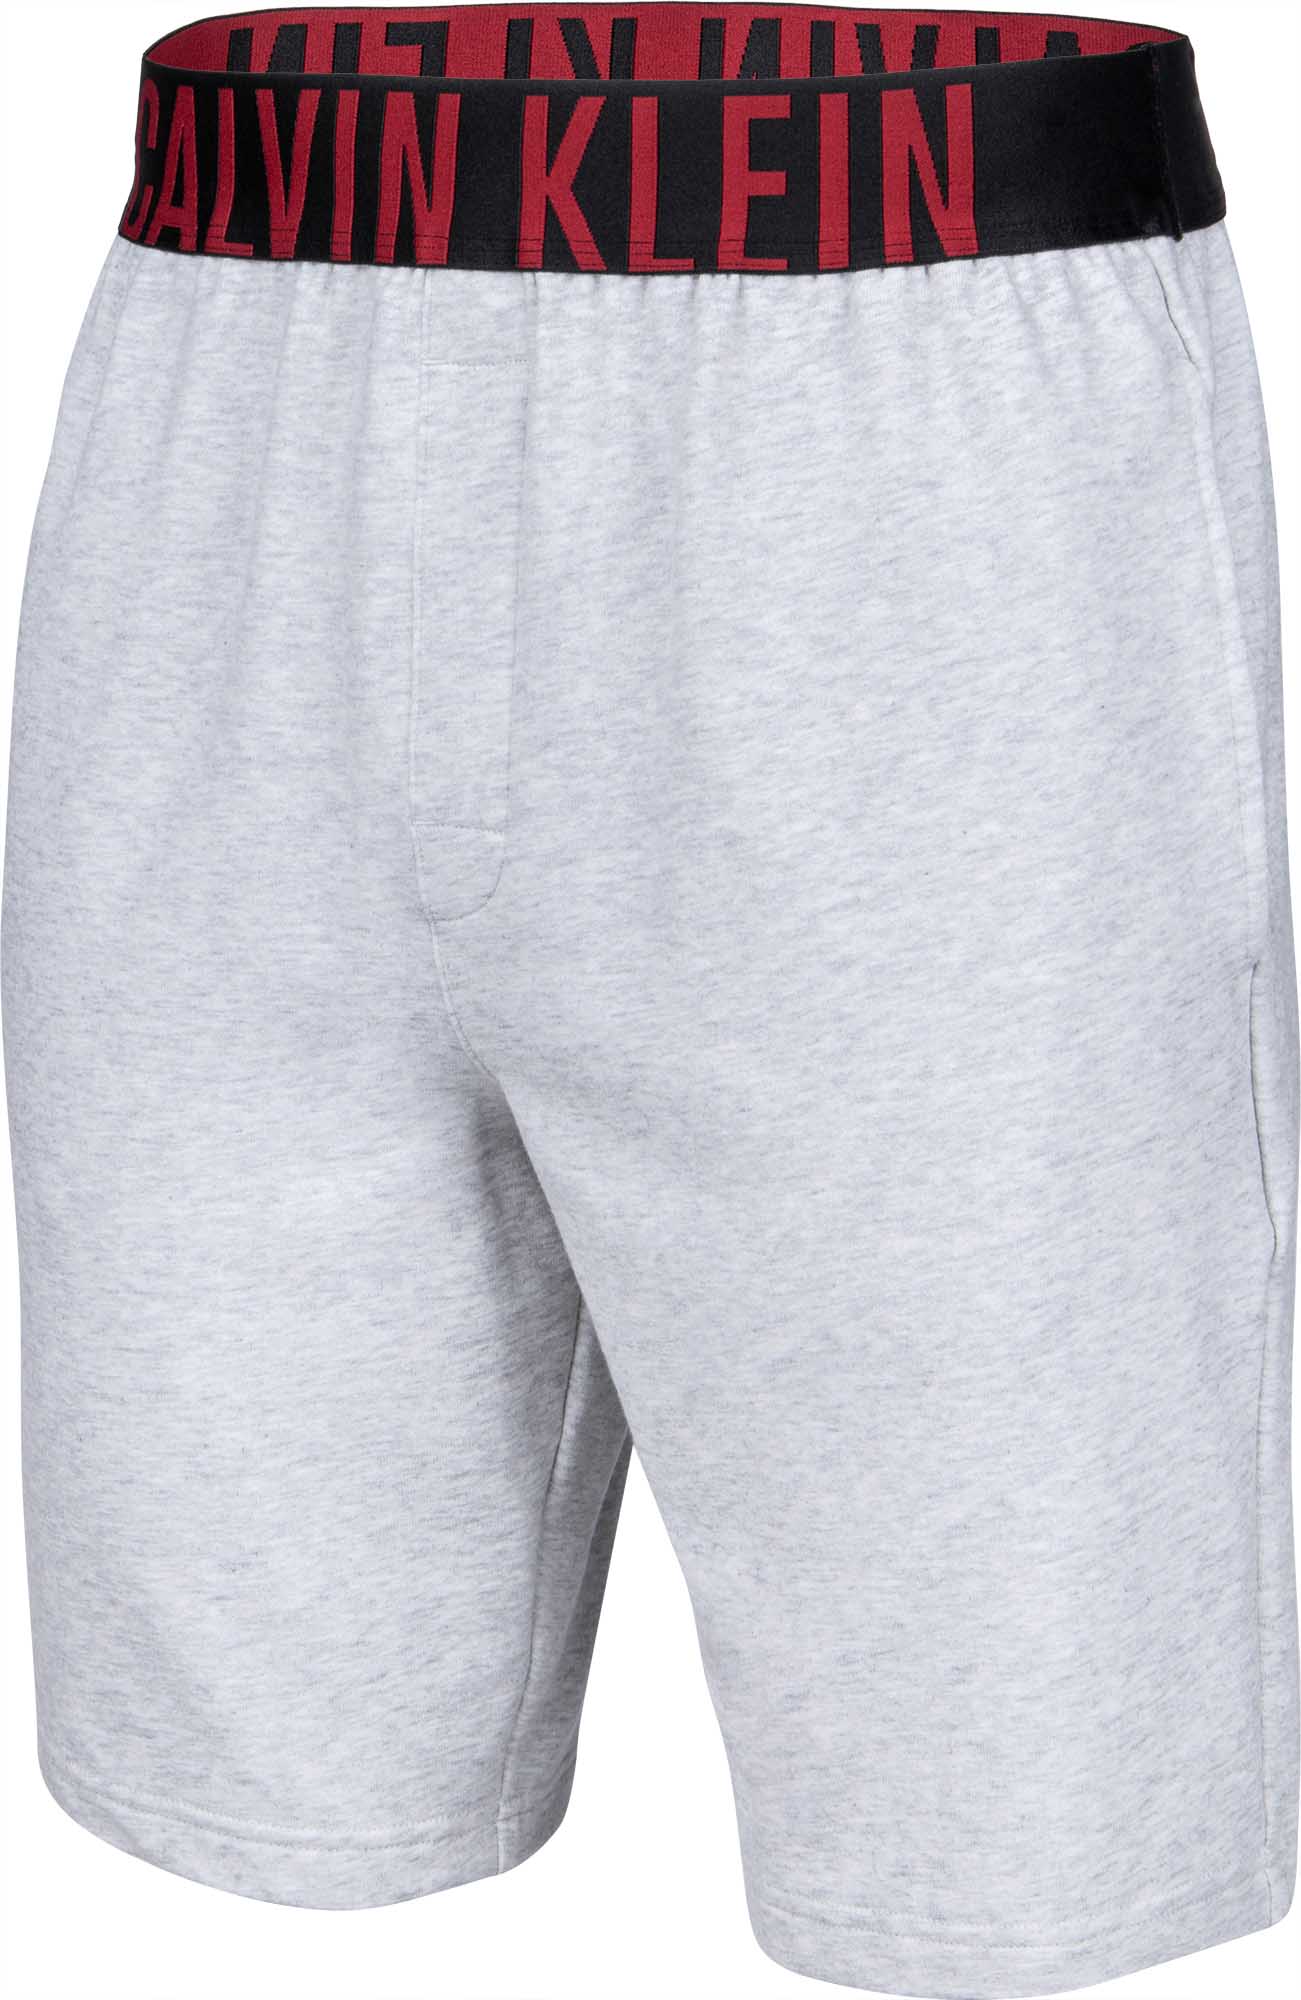 Pantaloni scurți pentru bărbați